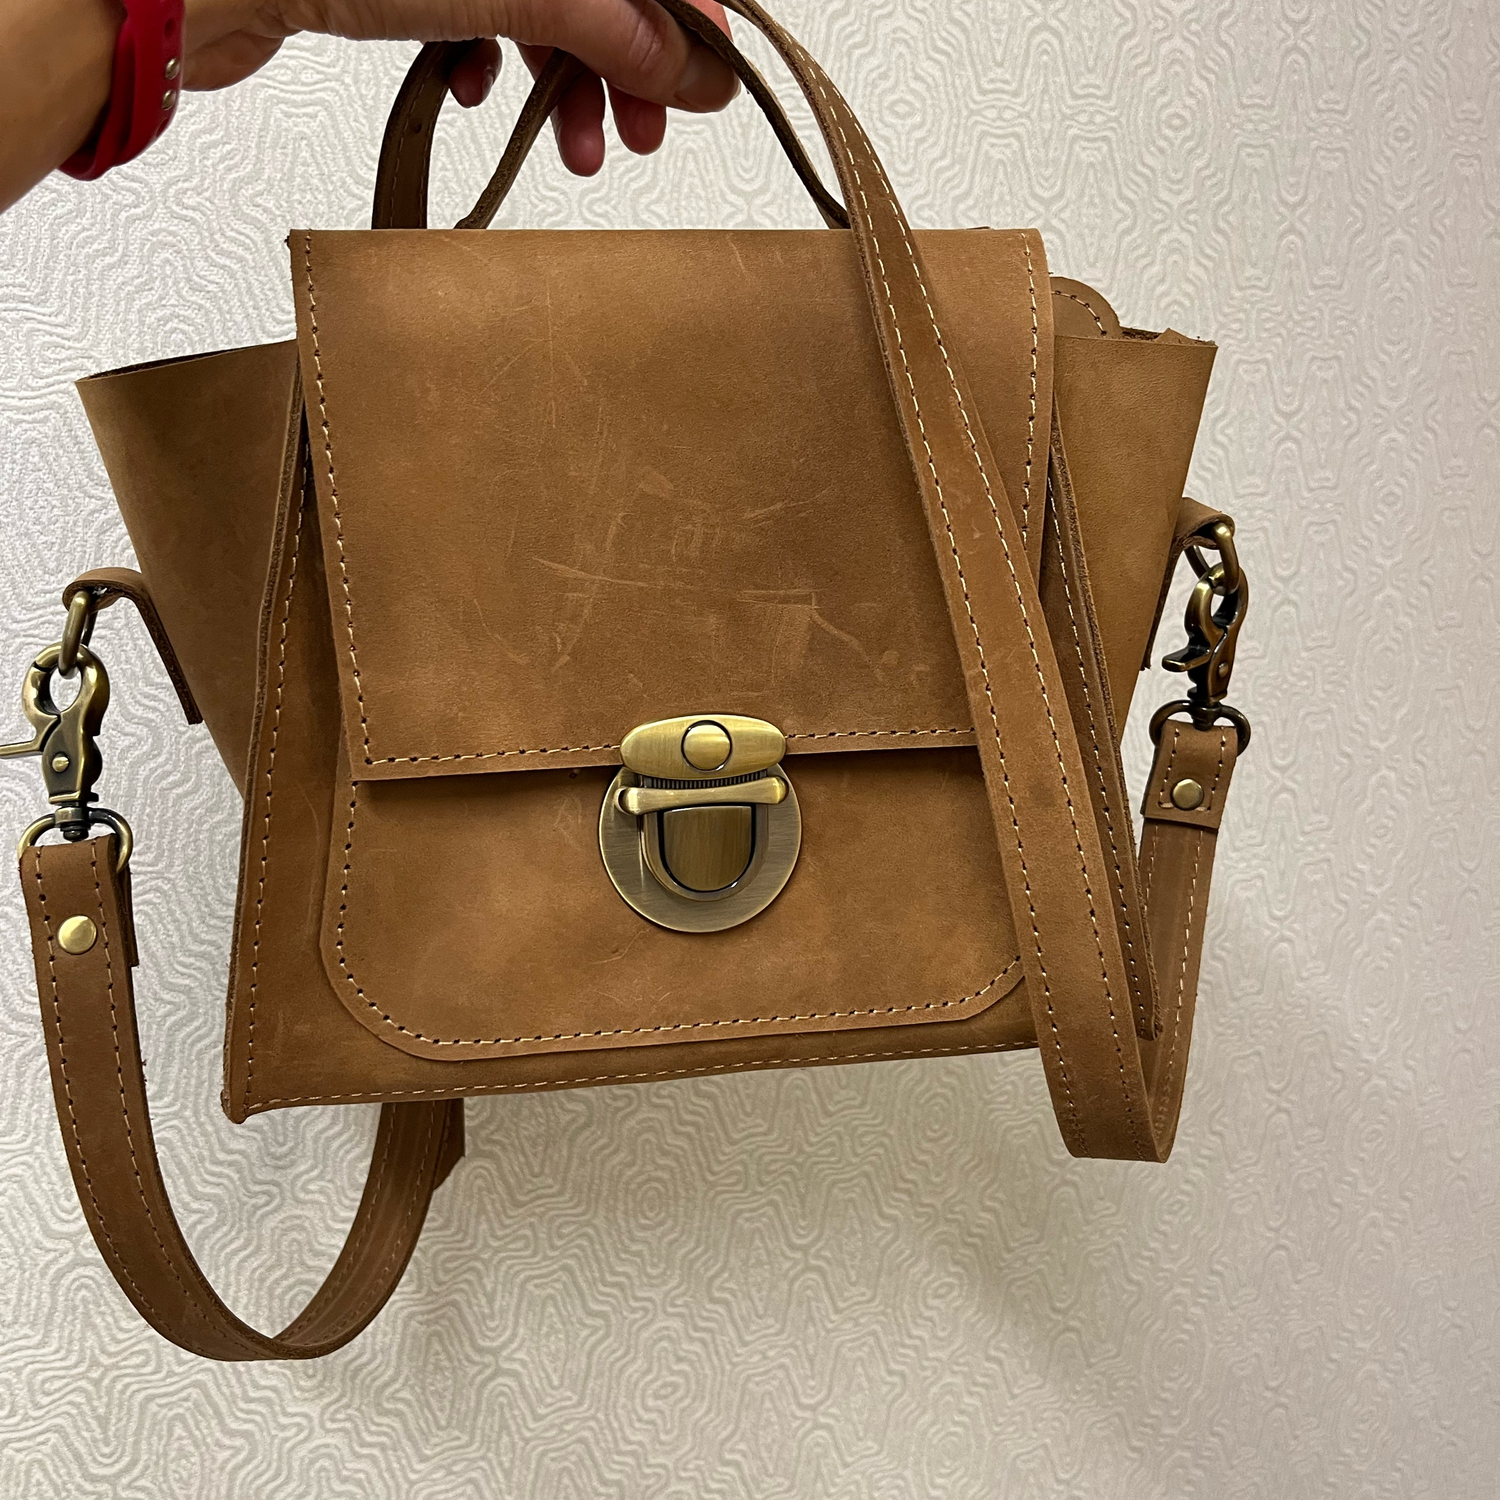 Photo №1 к отзыву покупателя Olga о товаре Кожаная сумочка "Виктори" бежевого цвета